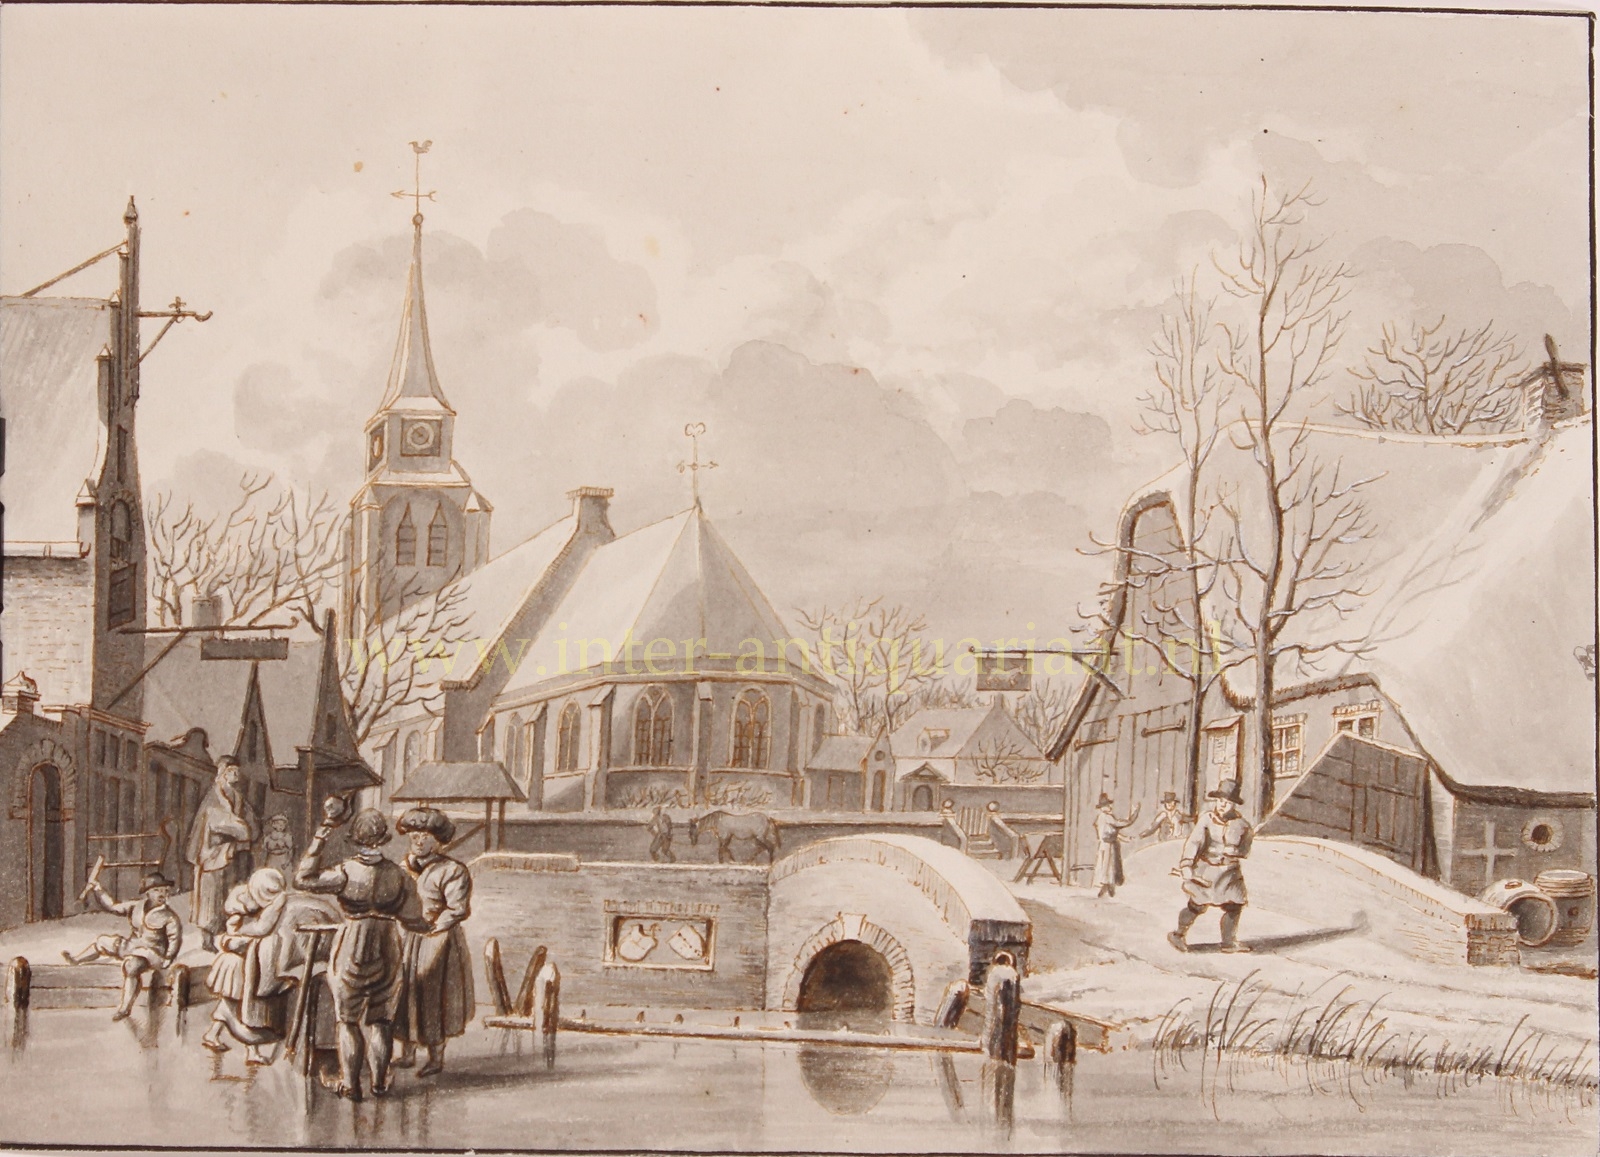  - Winter in a Dutch village - De la Fontaine Verweij Jr., 1826